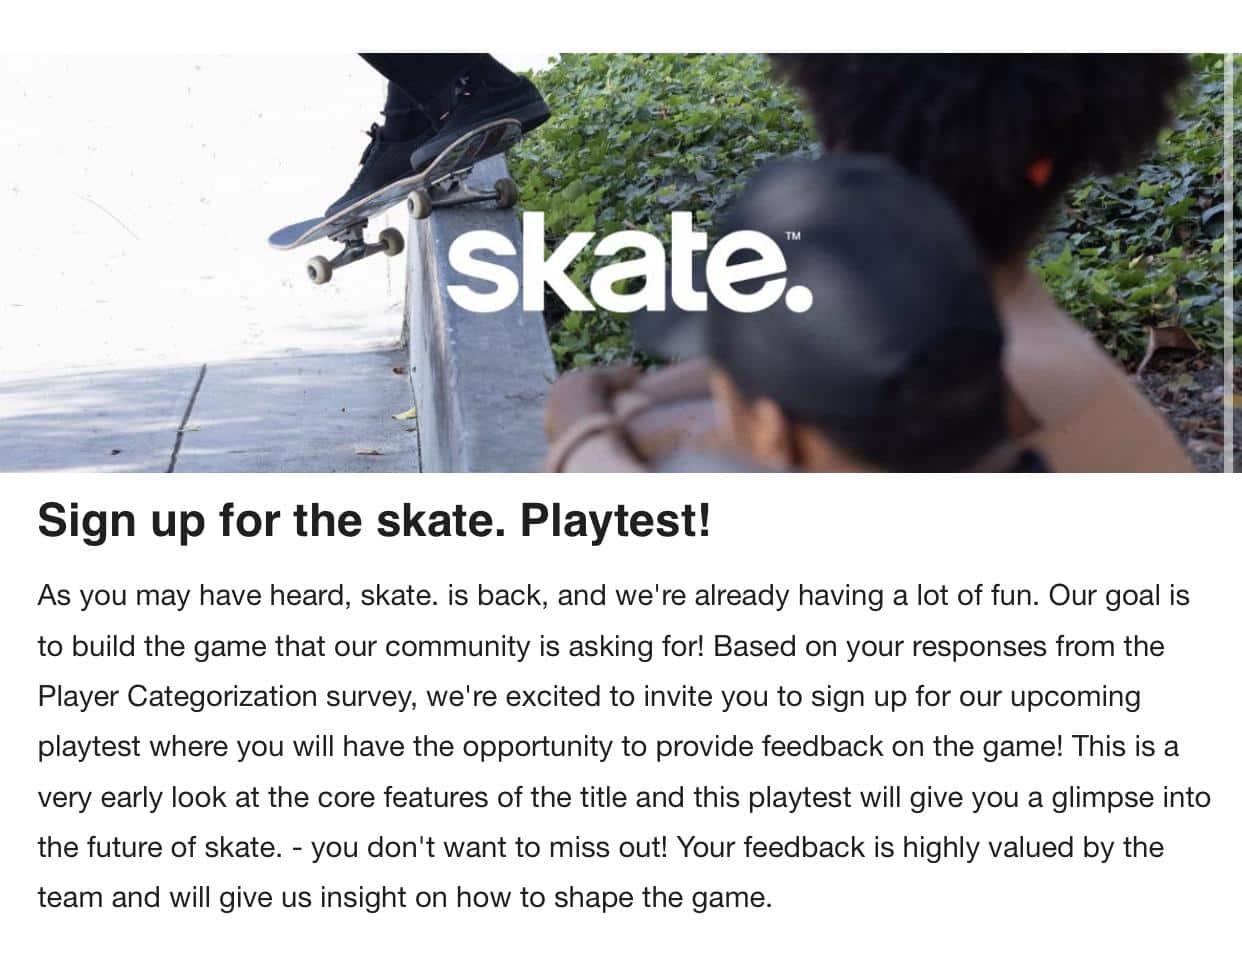 Skate 4 playtest invite